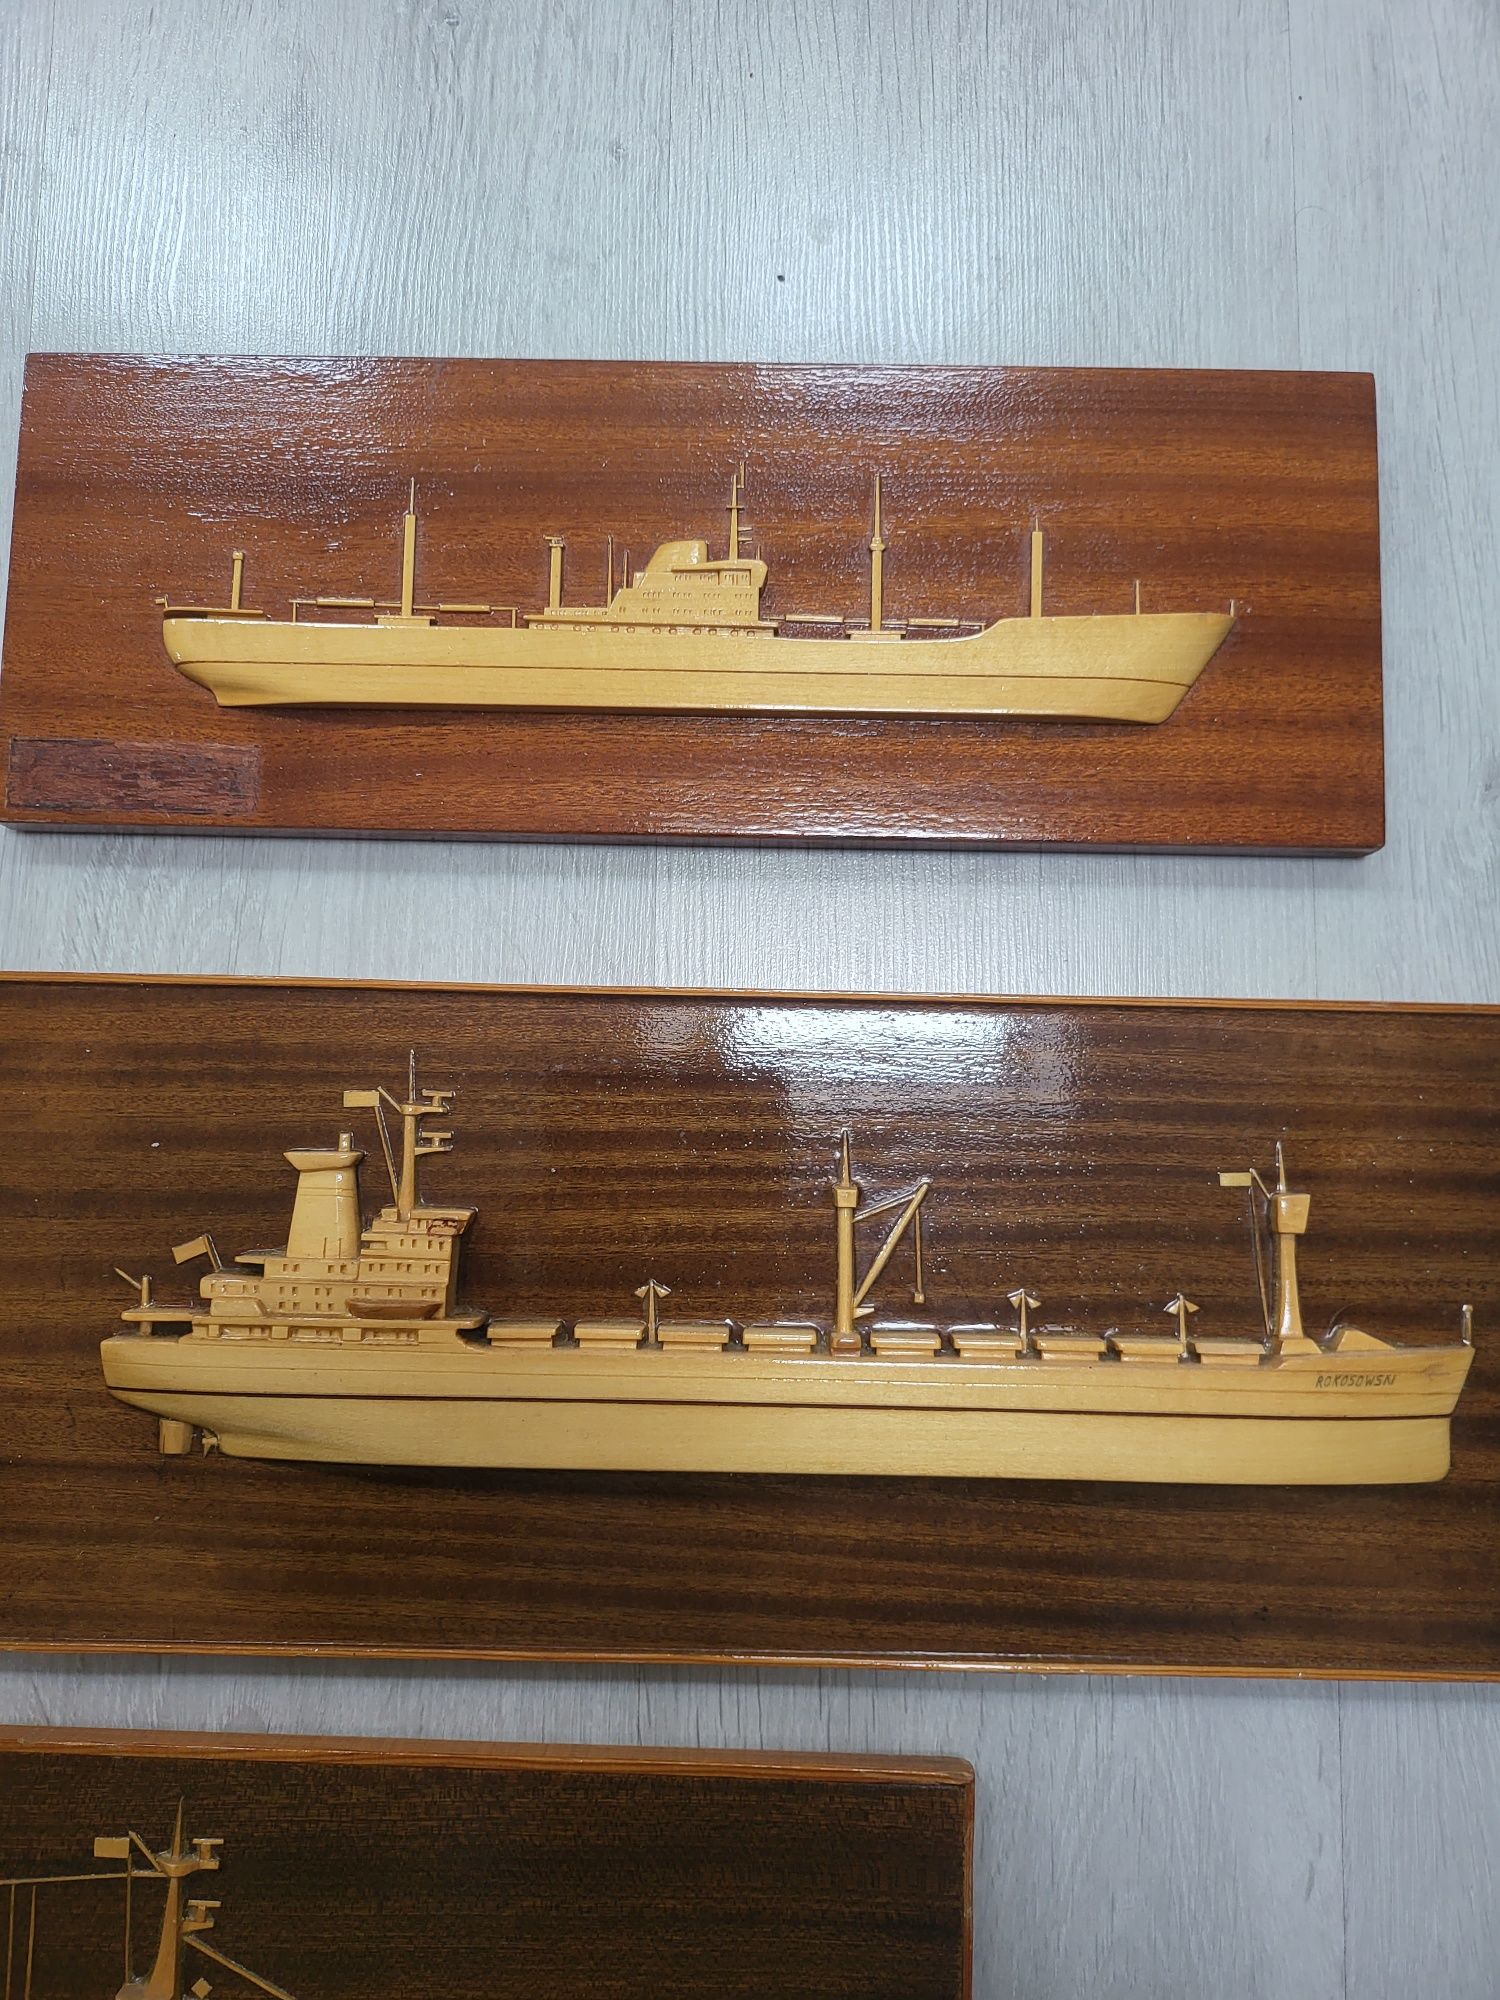 Modele statków Batory +inne